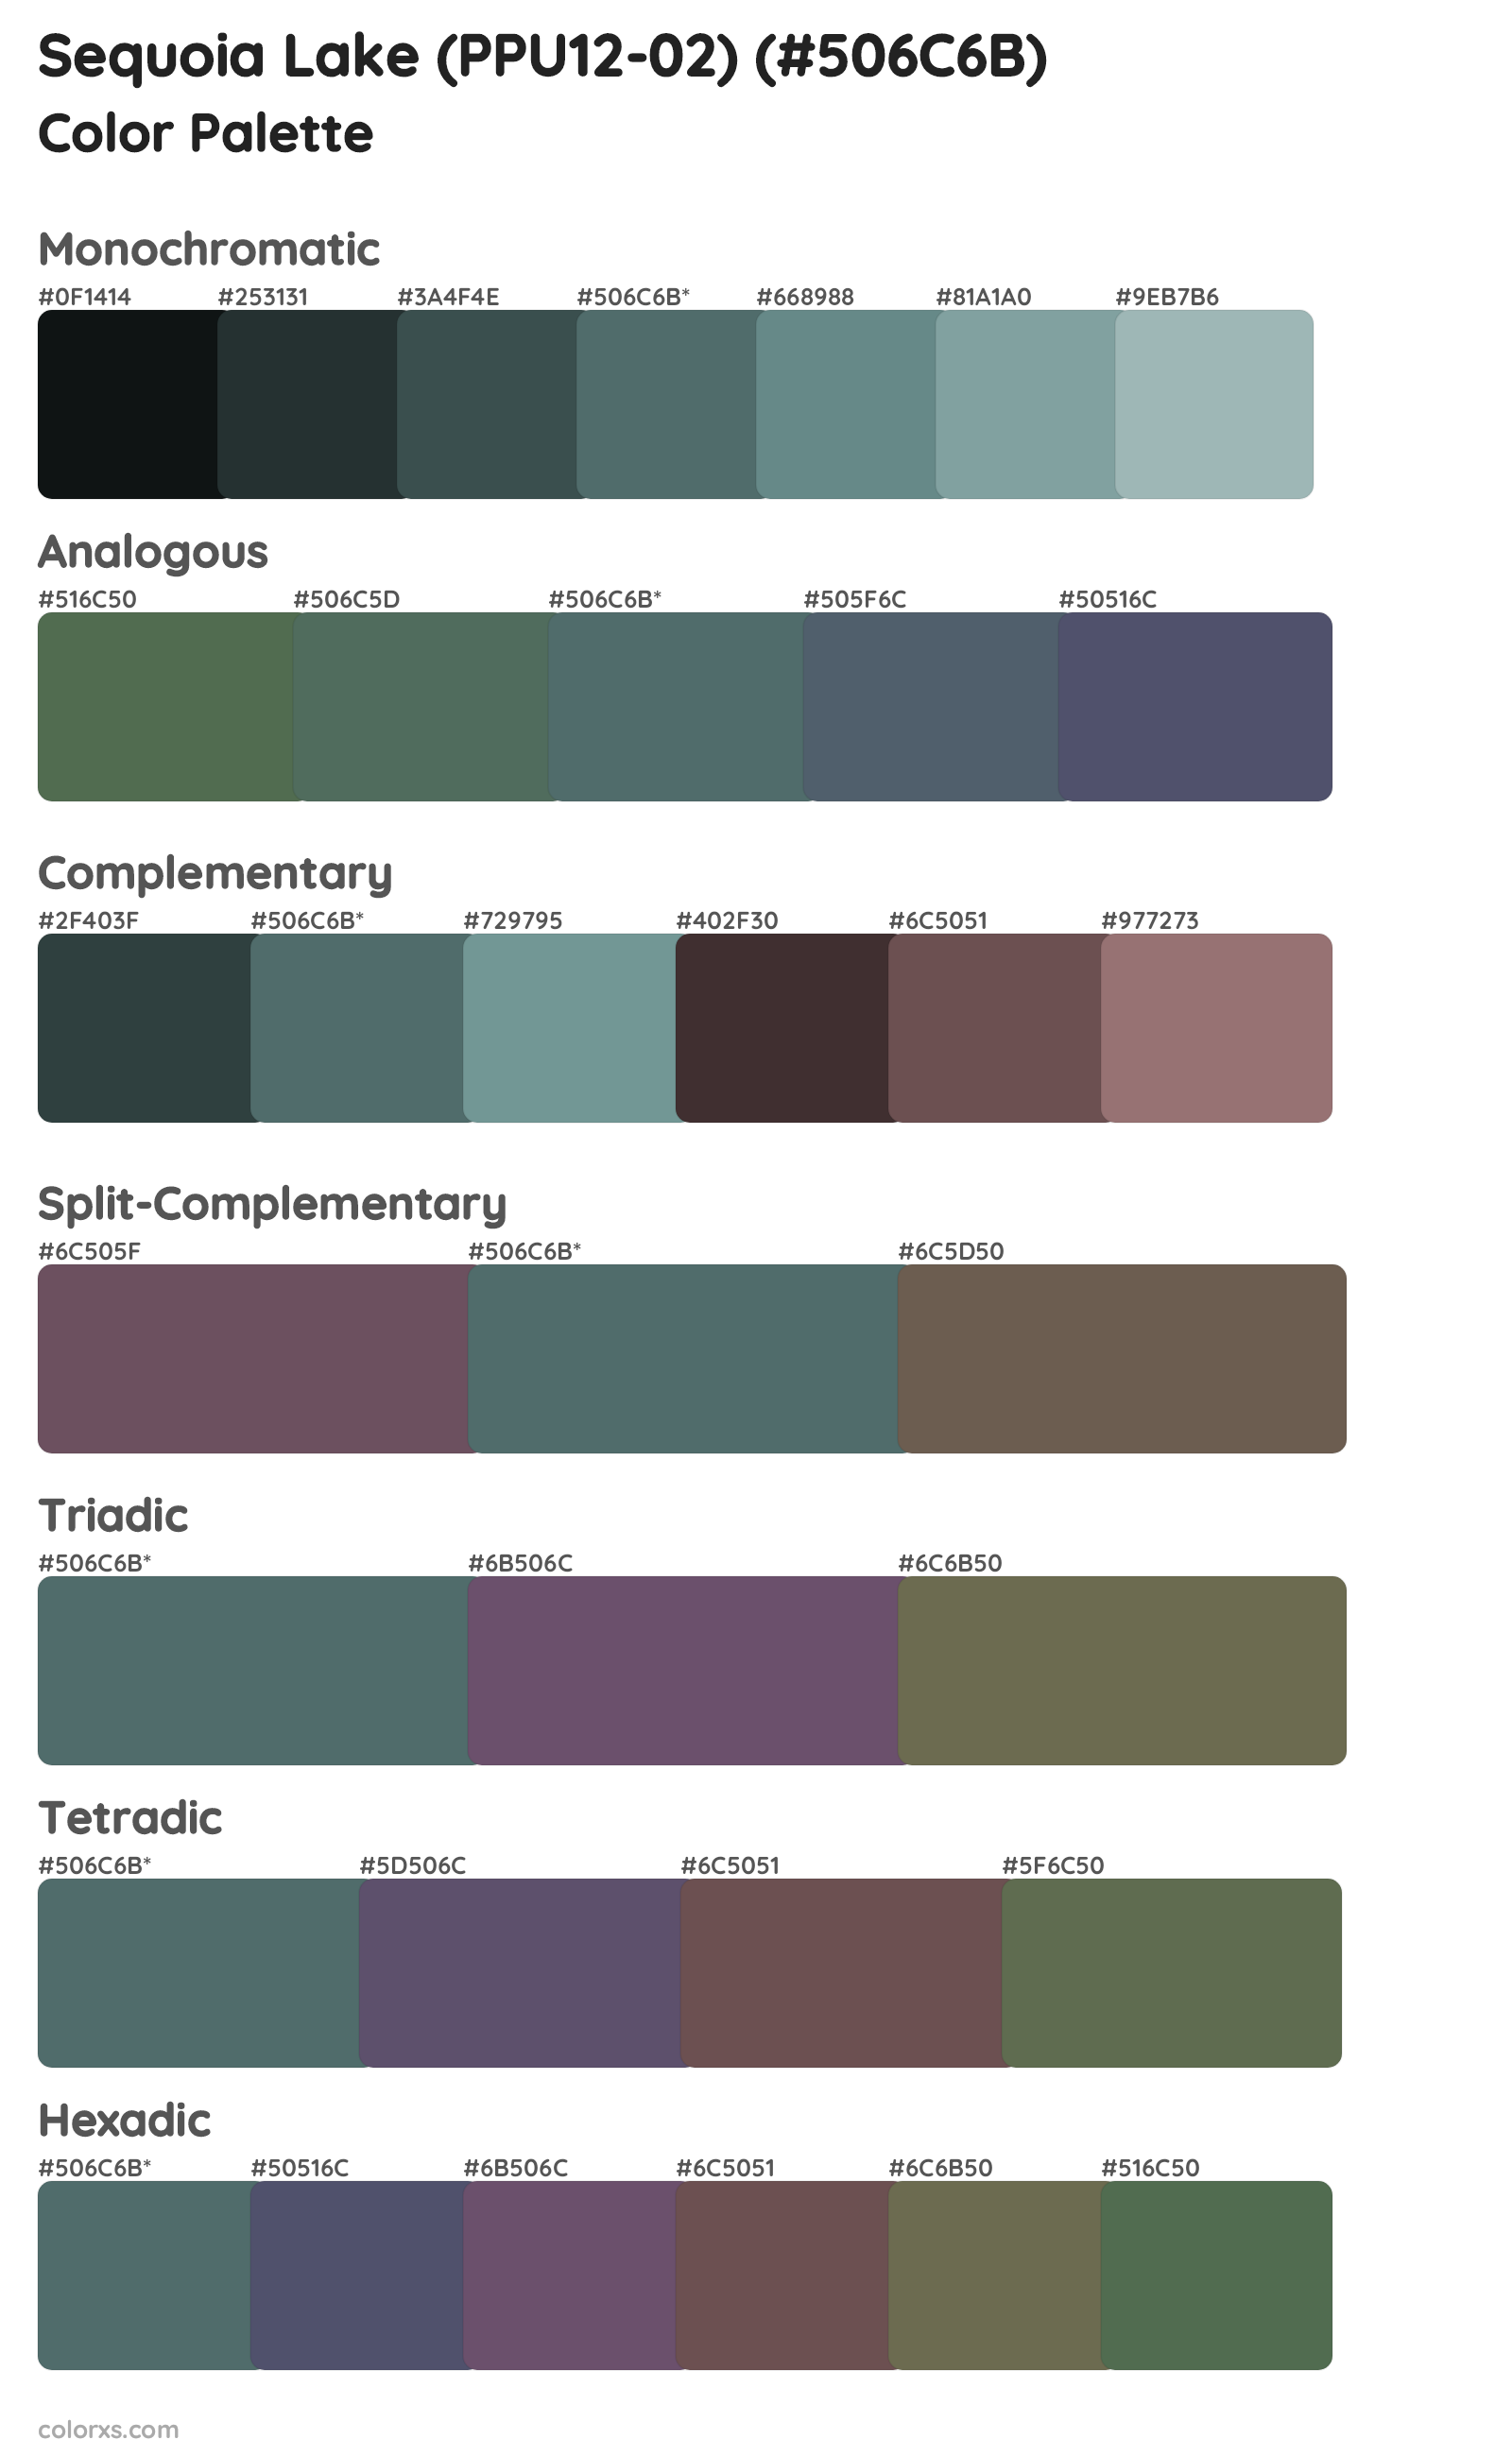 Sequoia Lake (PPU12-02) Color Scheme Palettes